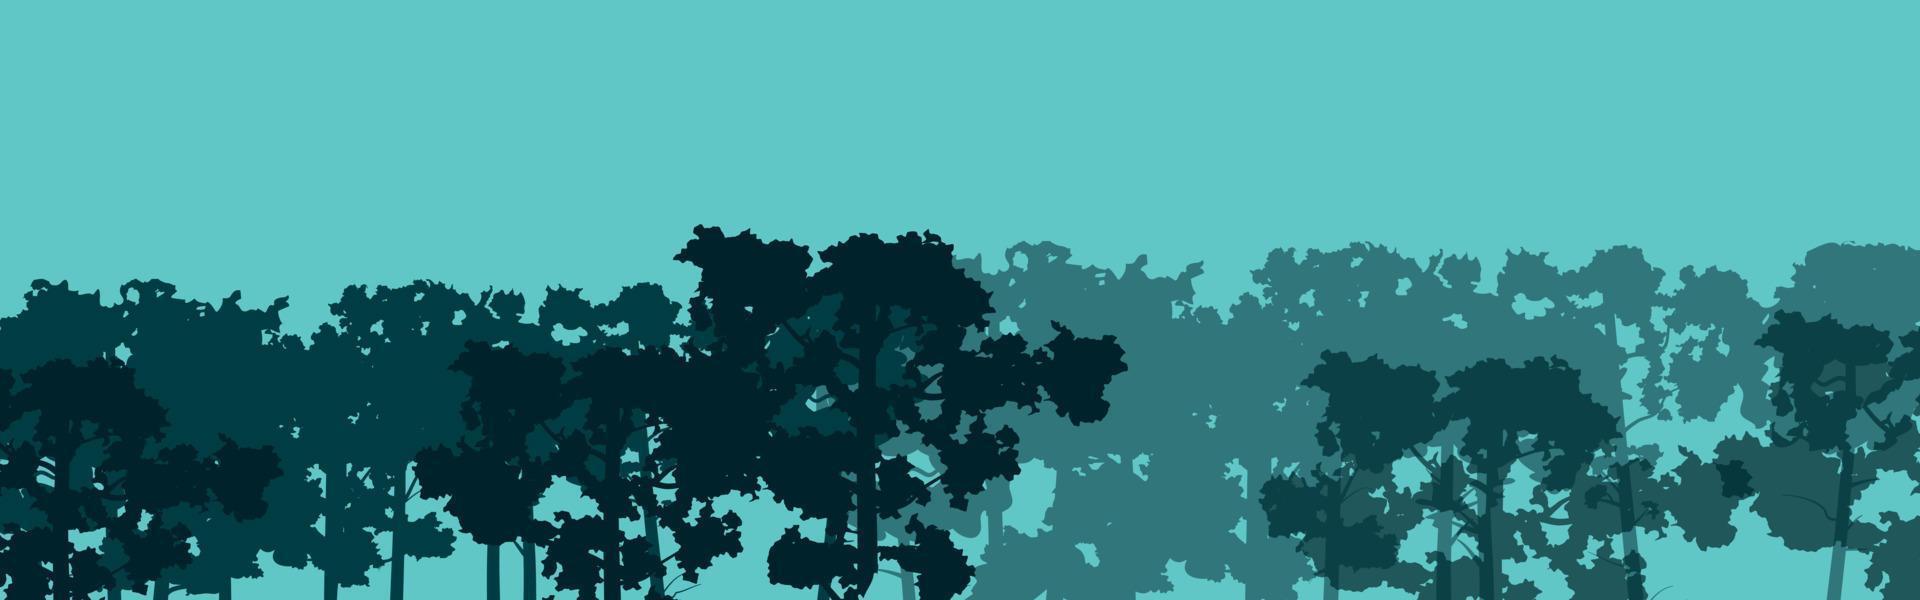 skog grön träd silhuett. natur, parkera, landskap. vektor